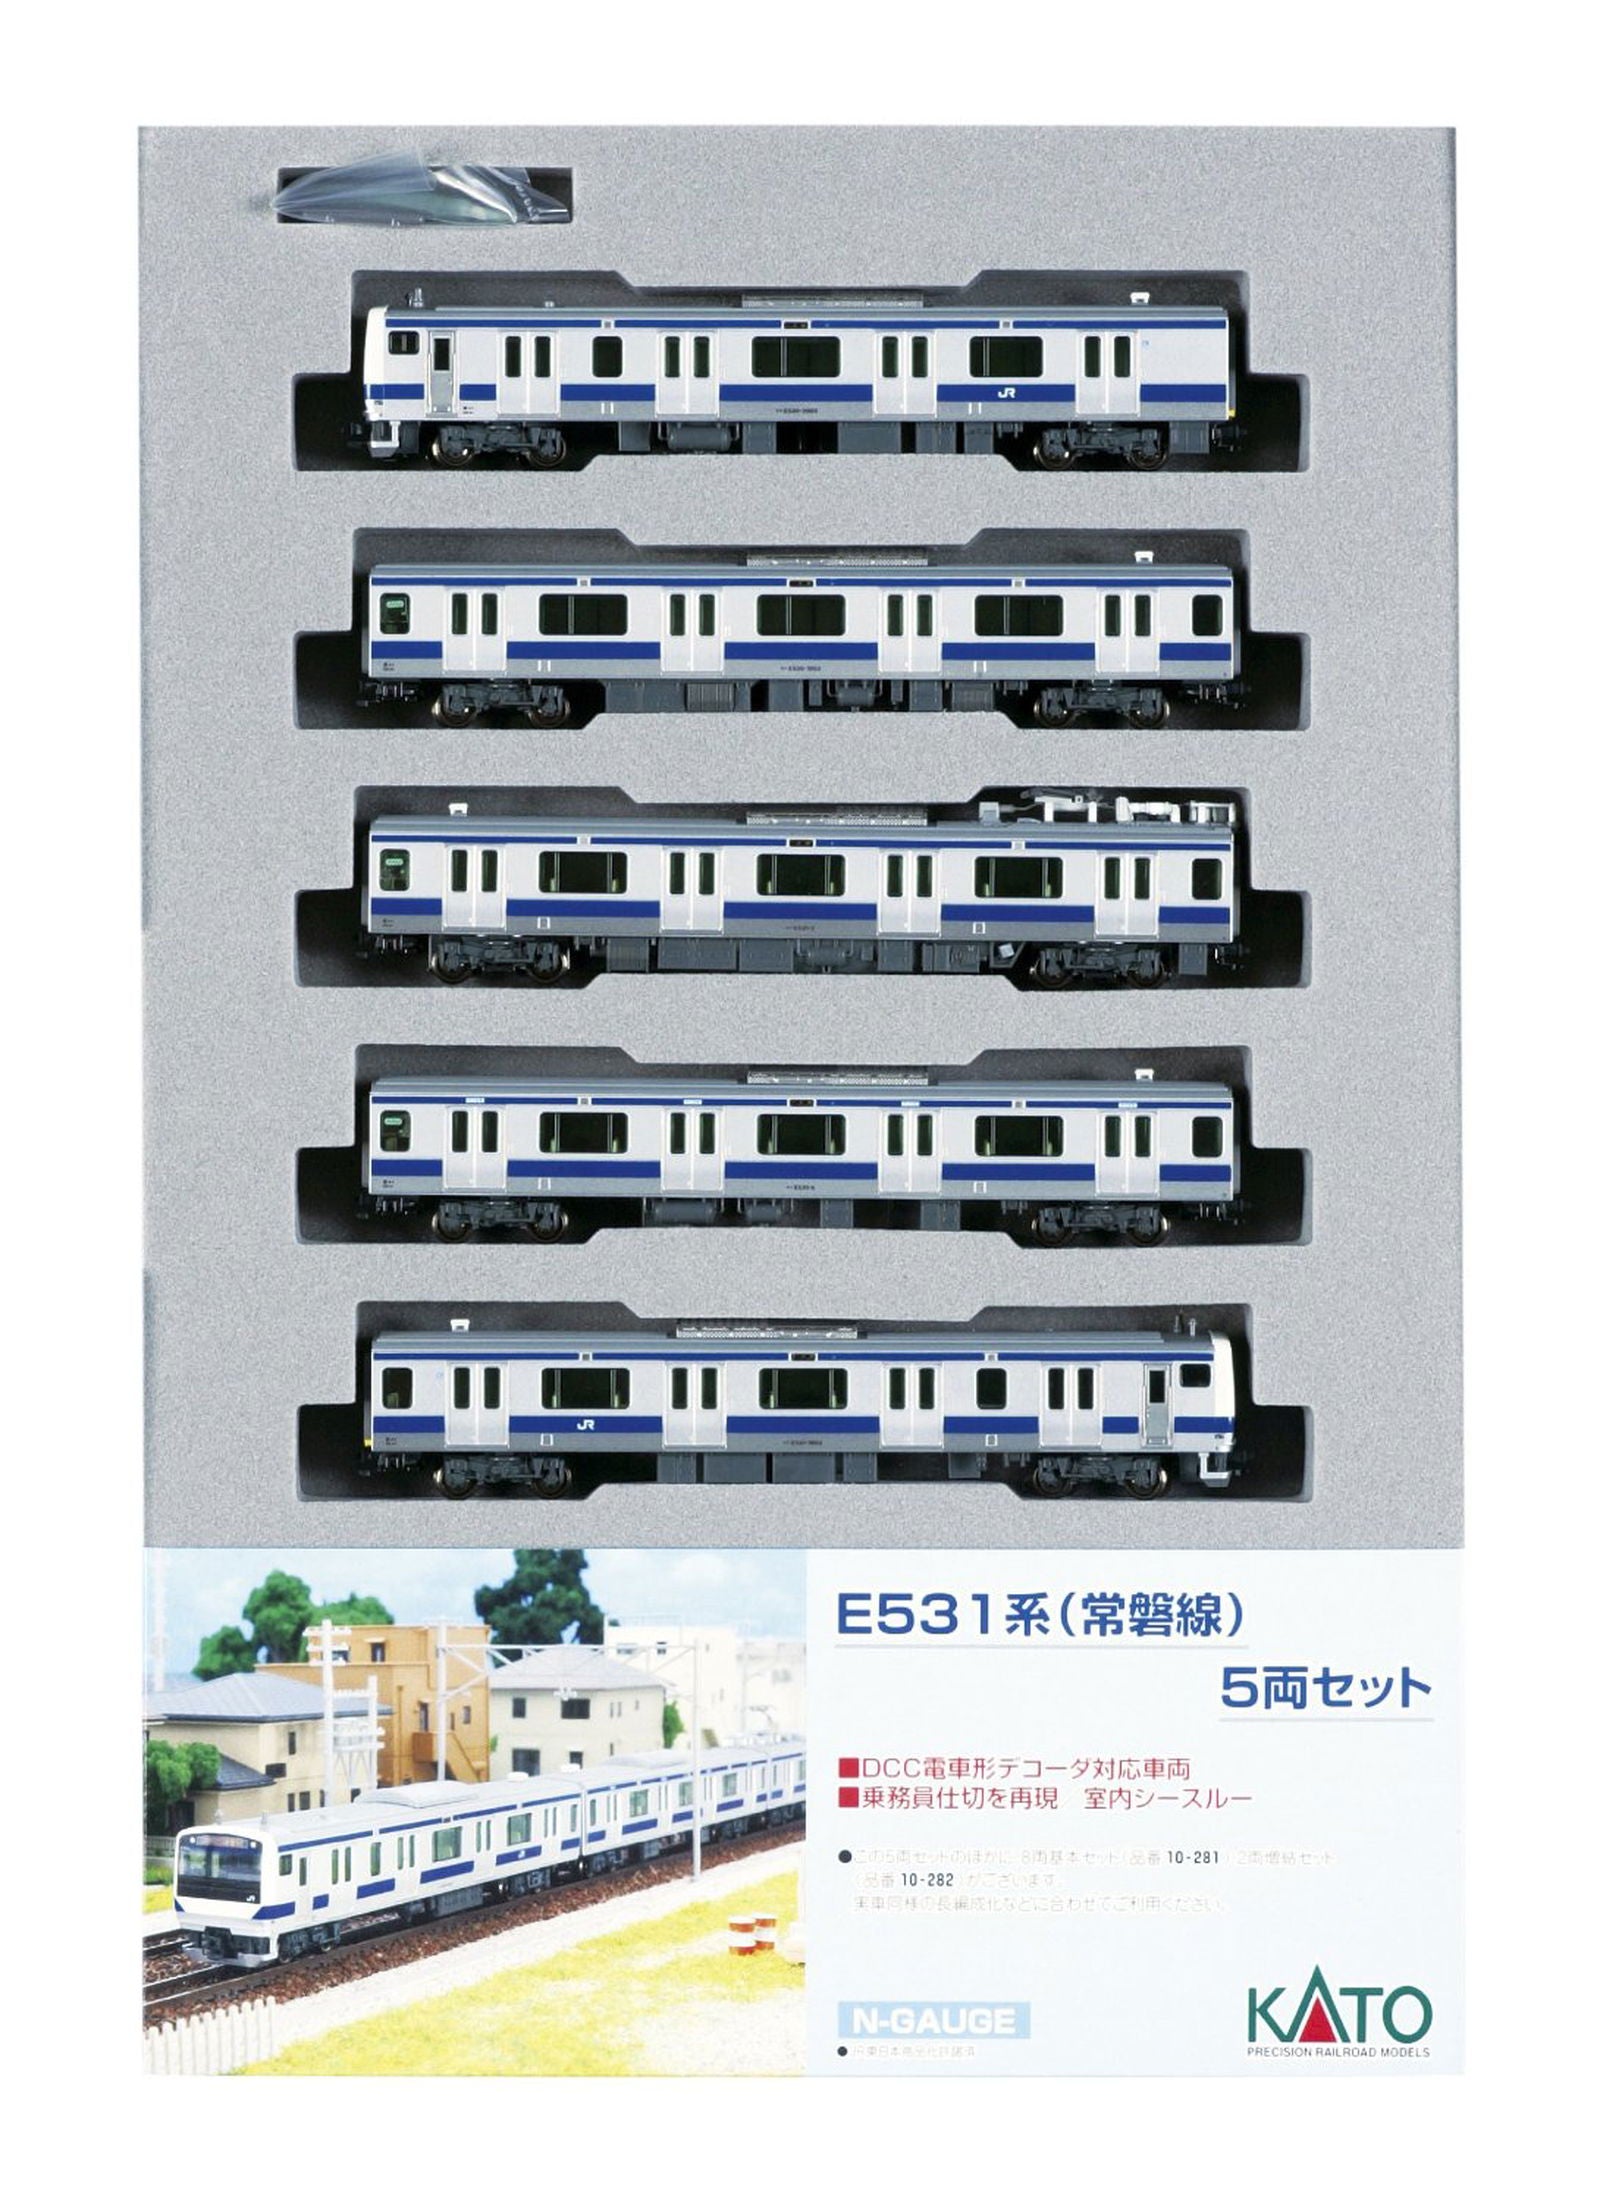 KATO 10-283 Series E531 Joban Line Suburban Ac/Dc 5 Car Set - BanzaiHobby